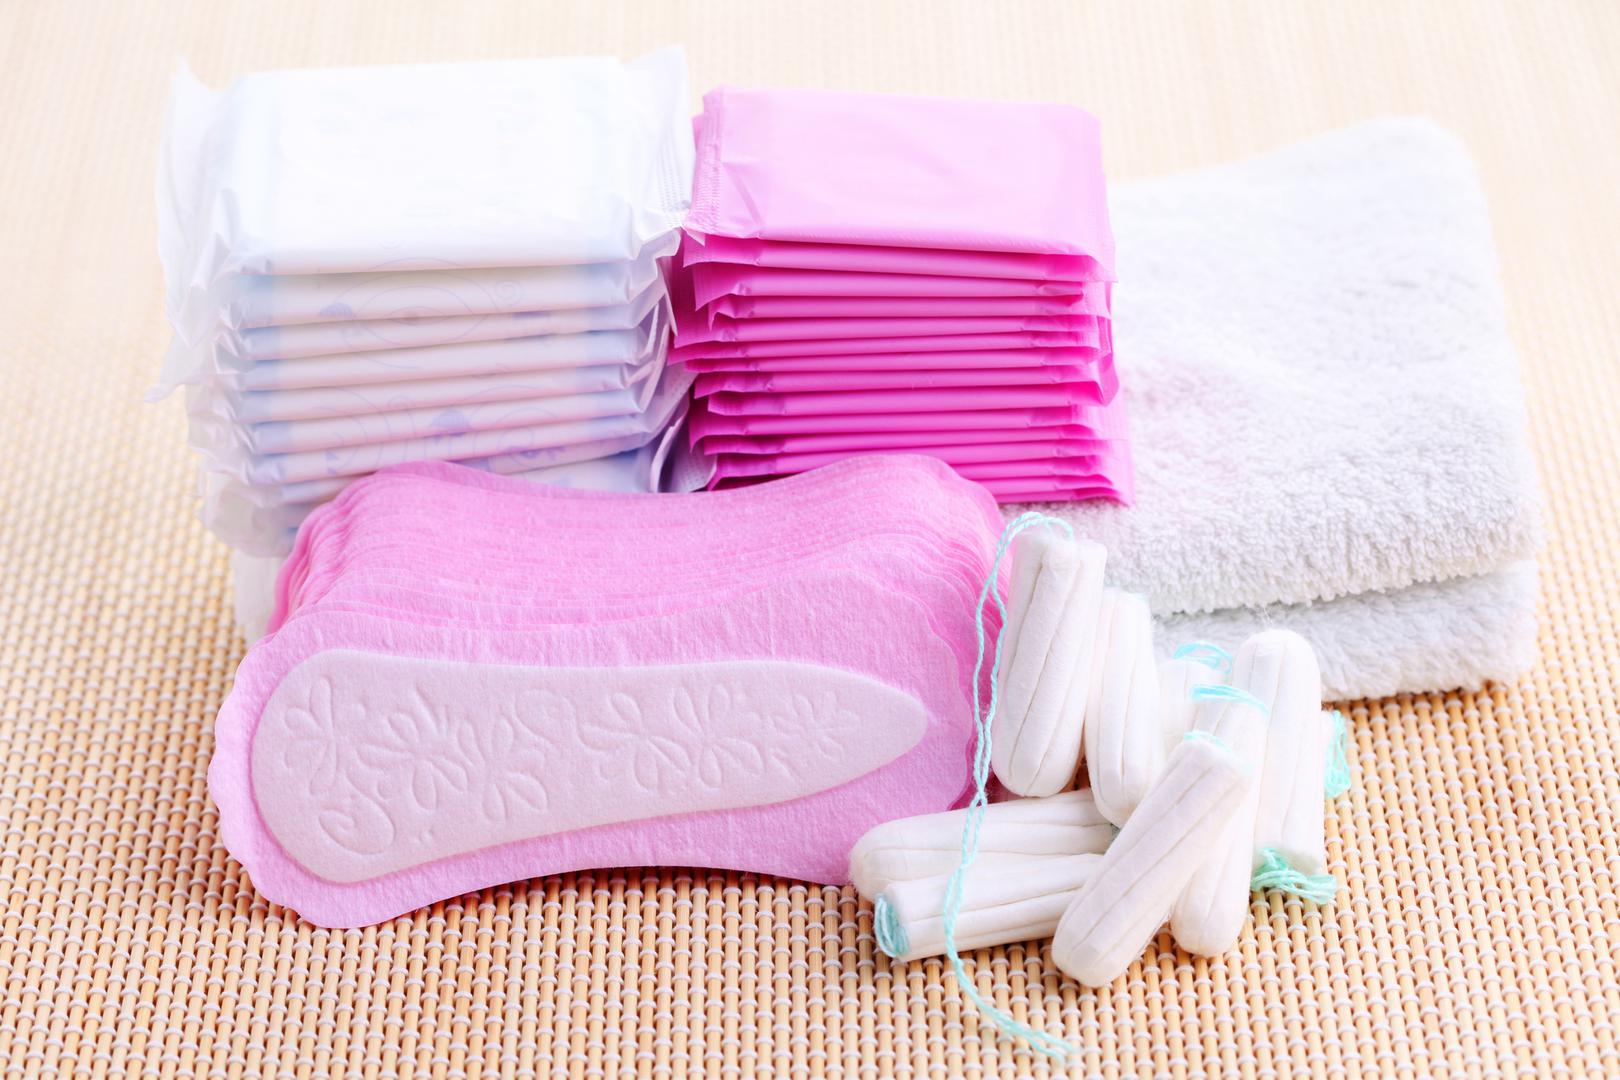 Tijekom menstrualnog ciklusa posebno je bitno održavati higijenu intimnih dijelova tijela kako bi se spriječio nastanak infekcije, bakterijske ili gljivične. 